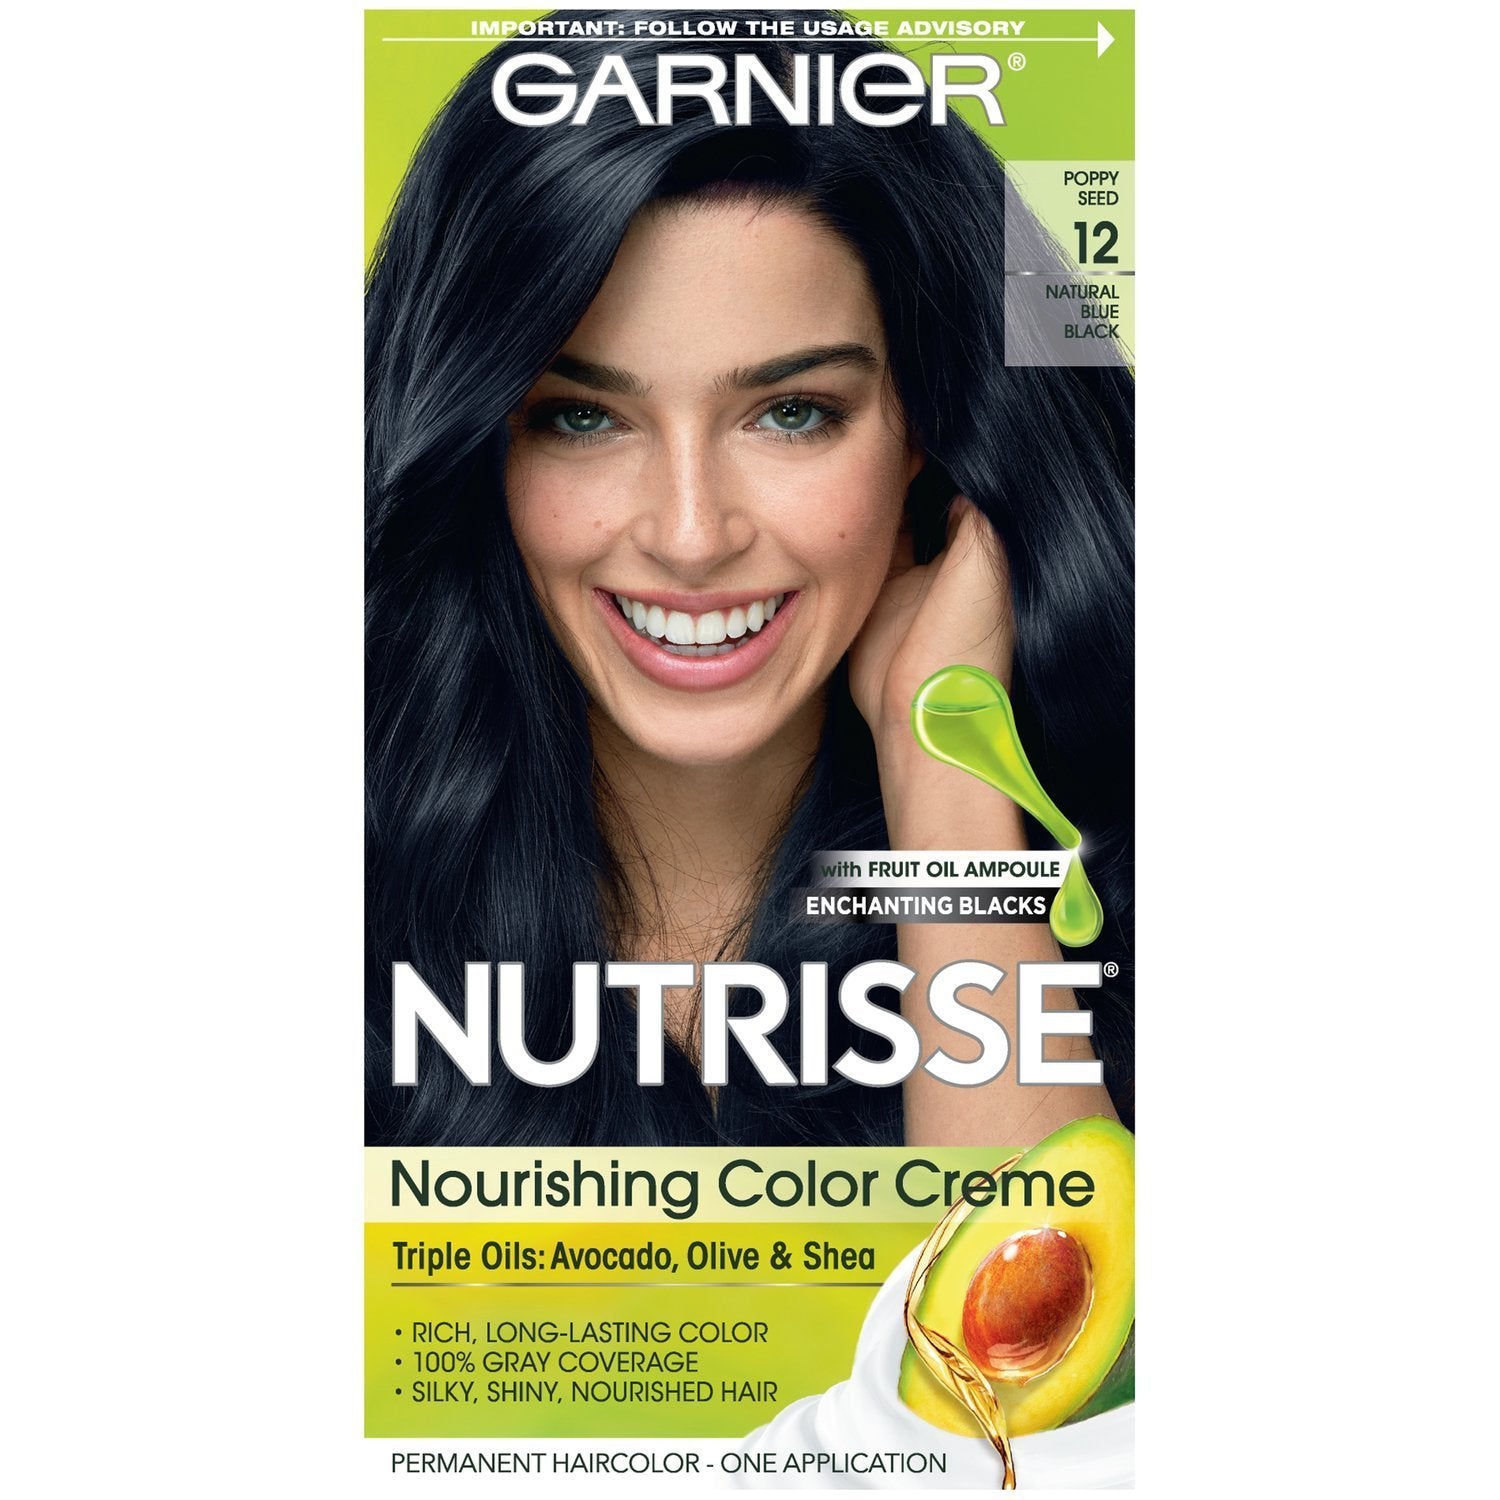 Garnier Nutrisse Nourishing Hair Color Creme, 12 Natural Blue Black, 1 kit-CaribOnline